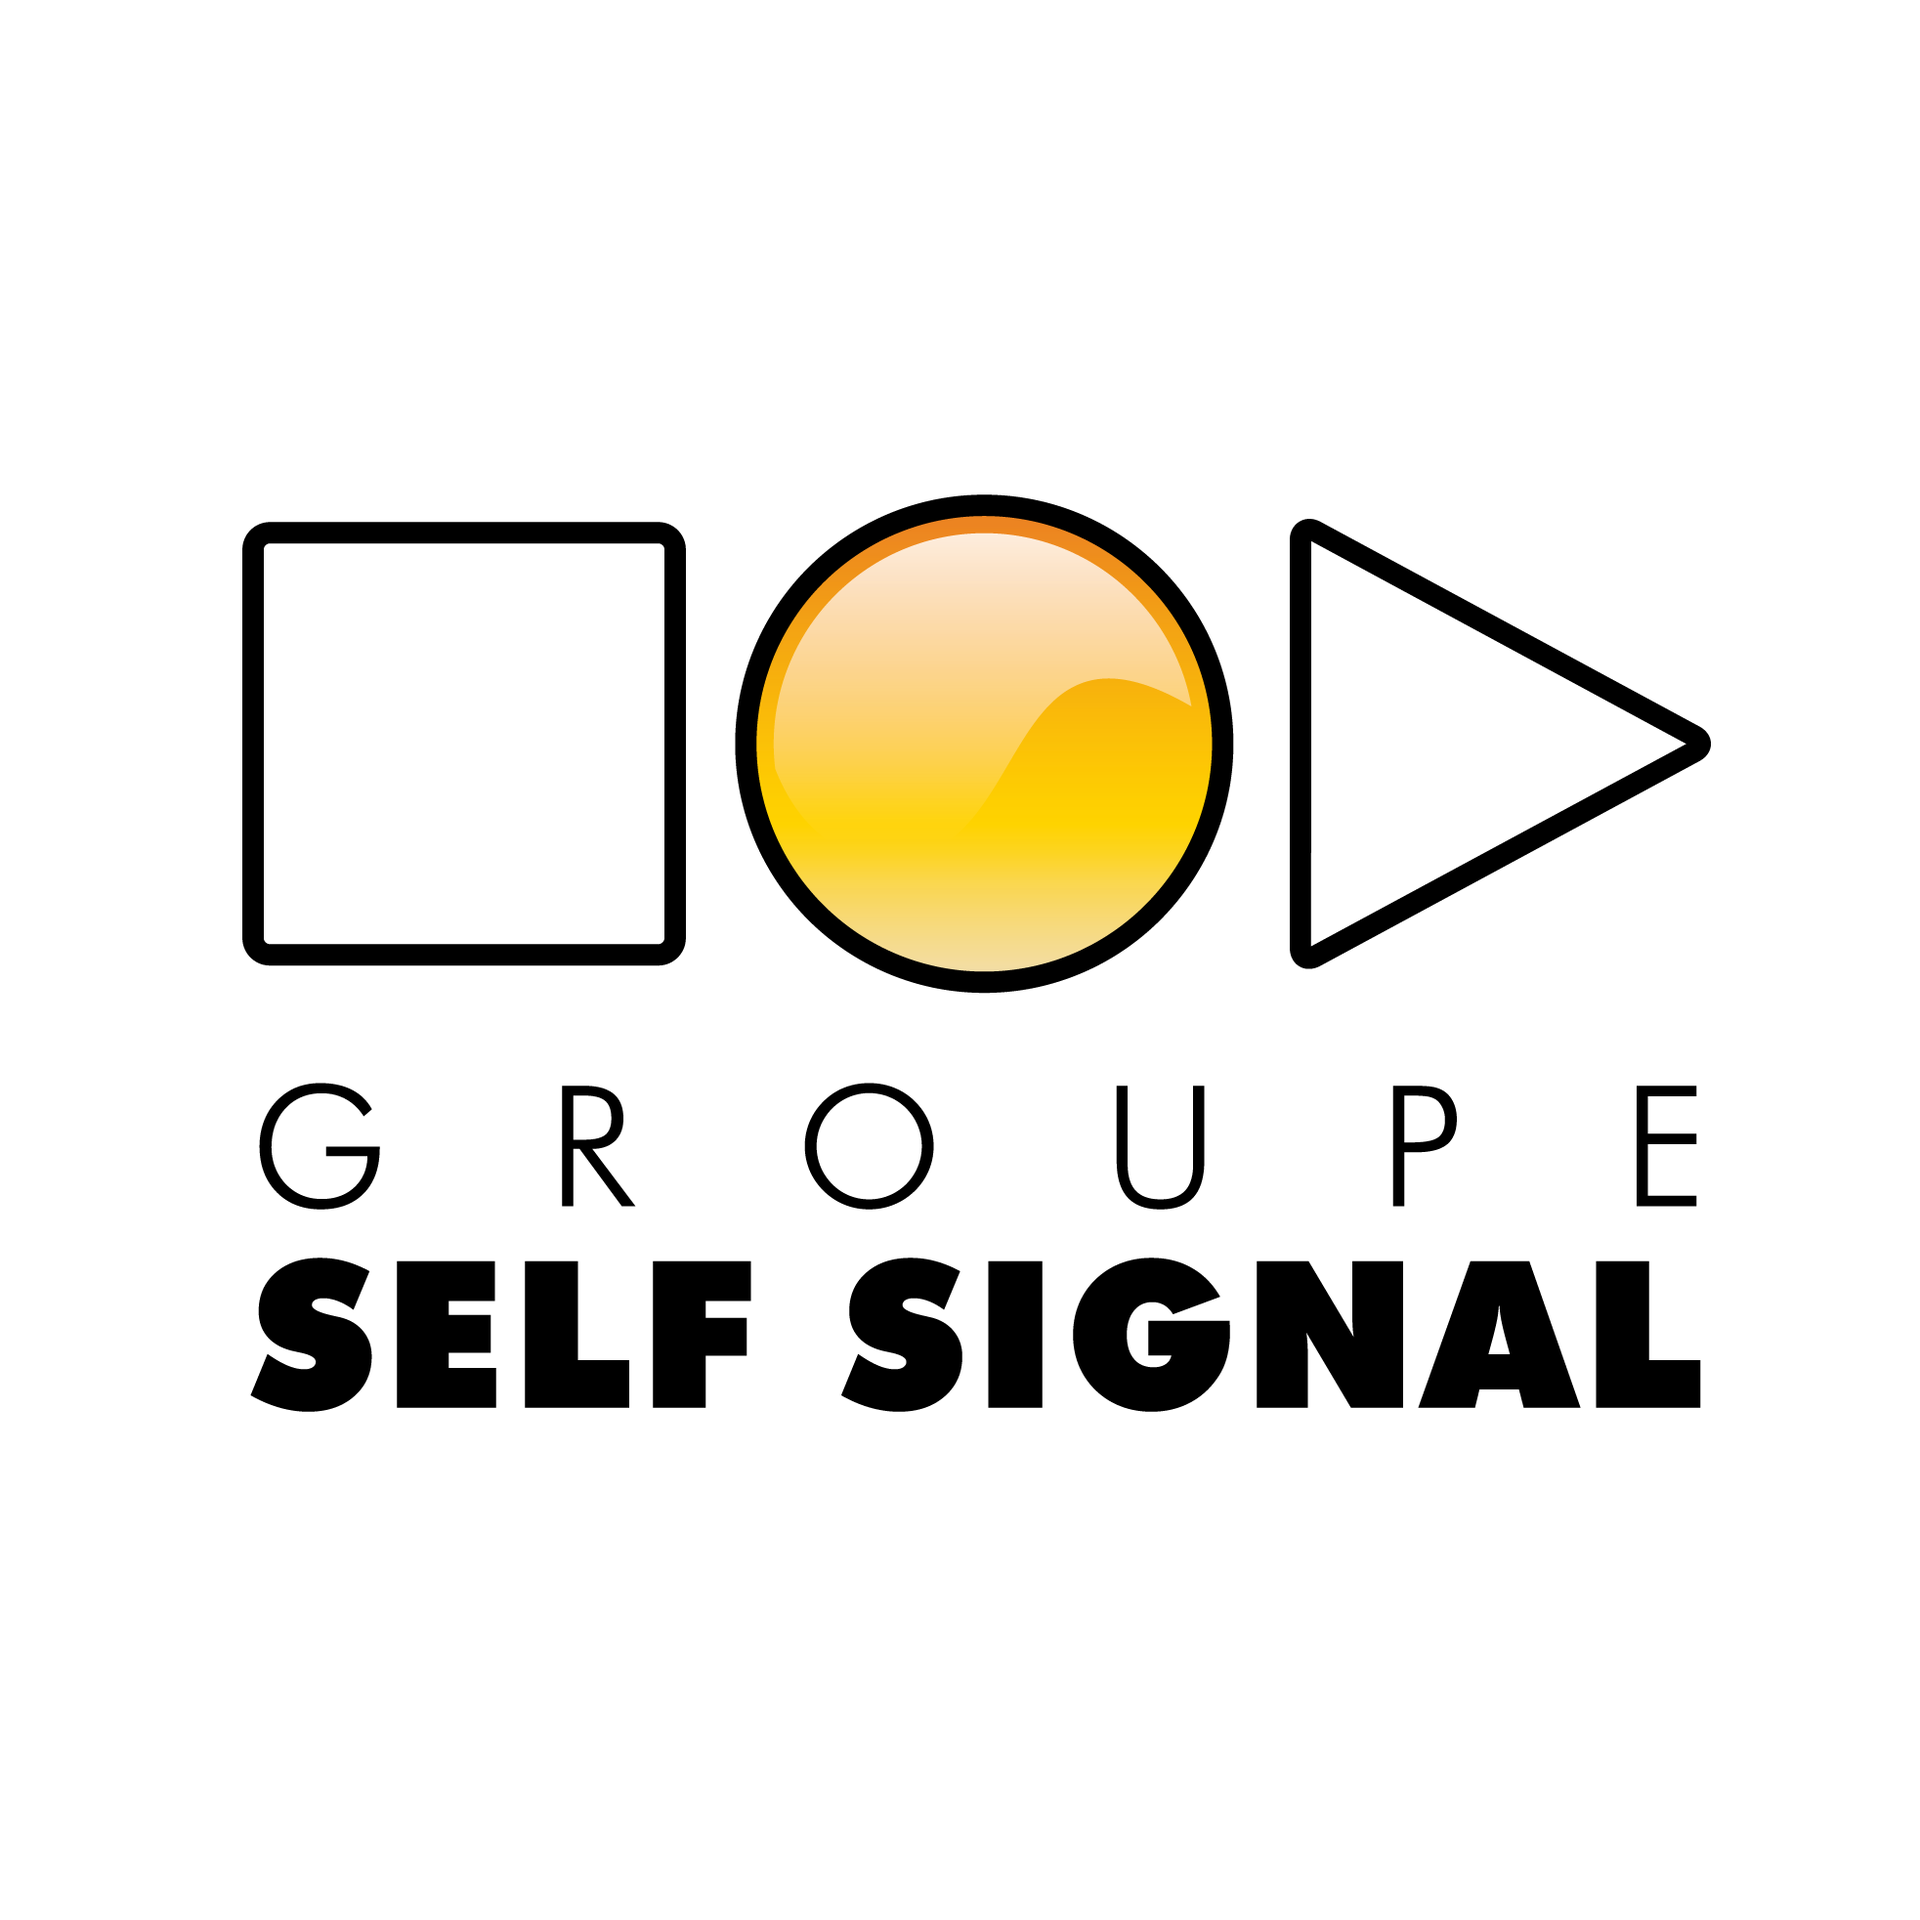 Self Signal agence et conseil en publicité